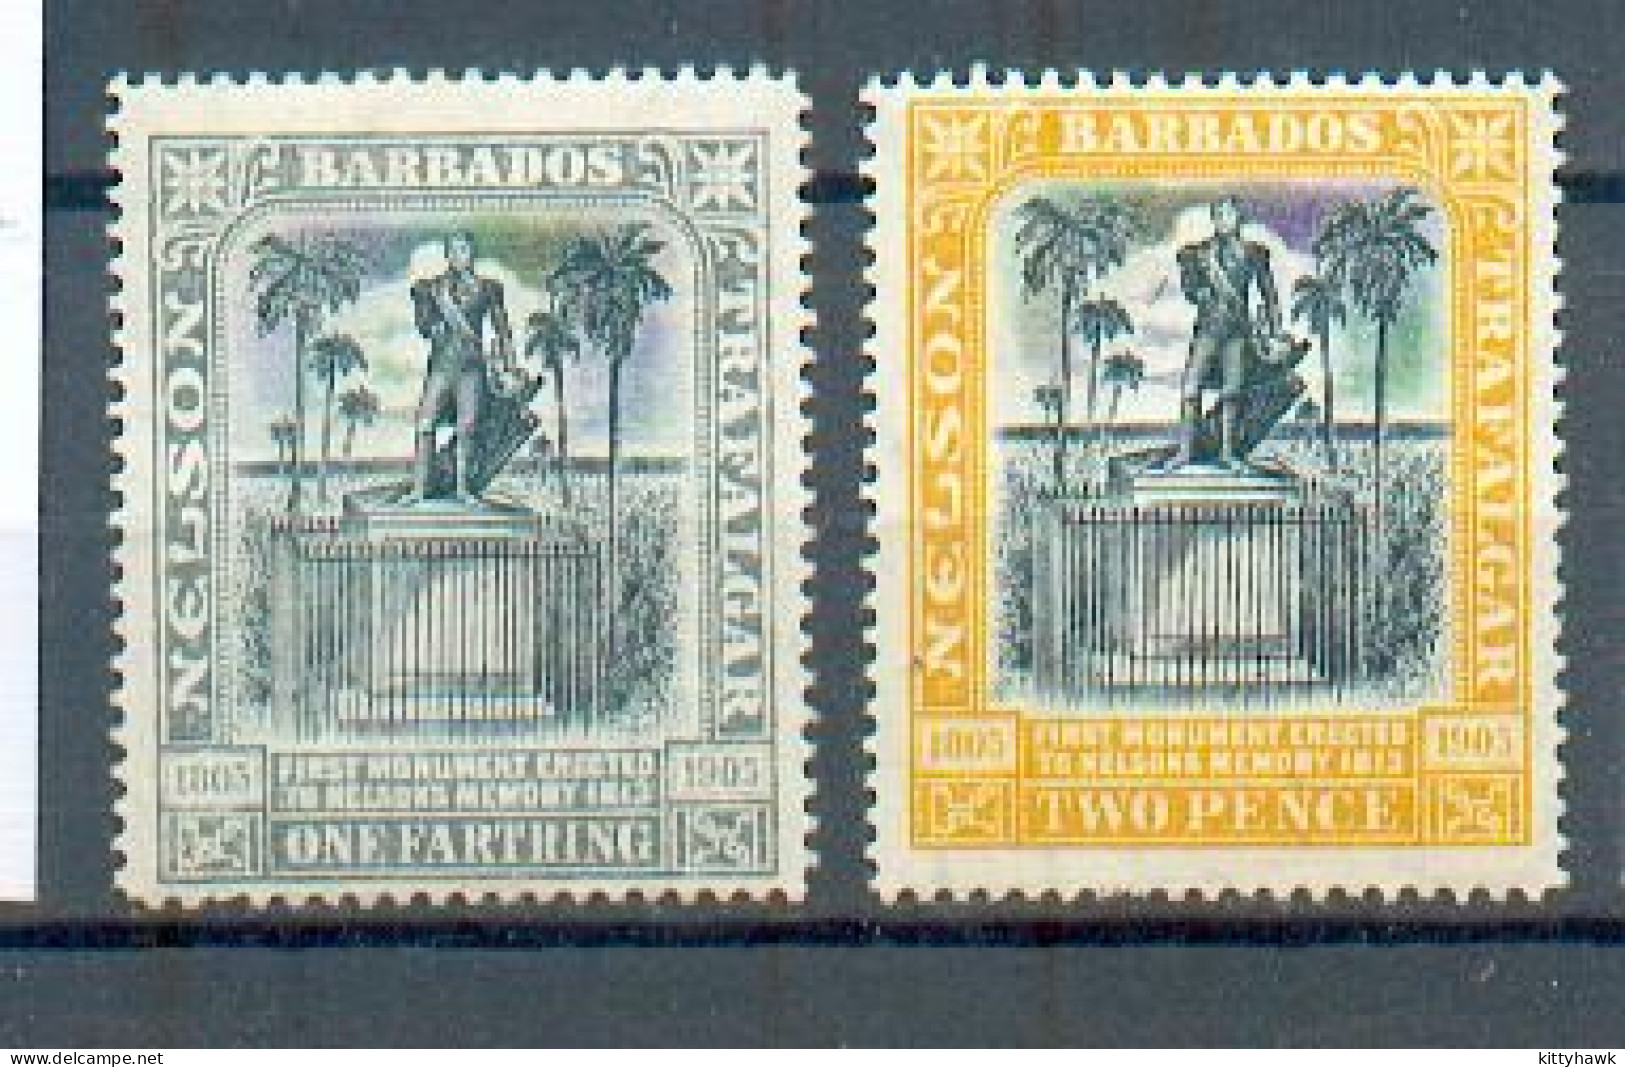 A 315 - BARBADE - YT 85 Et 86 * - Barbados (...-1966)